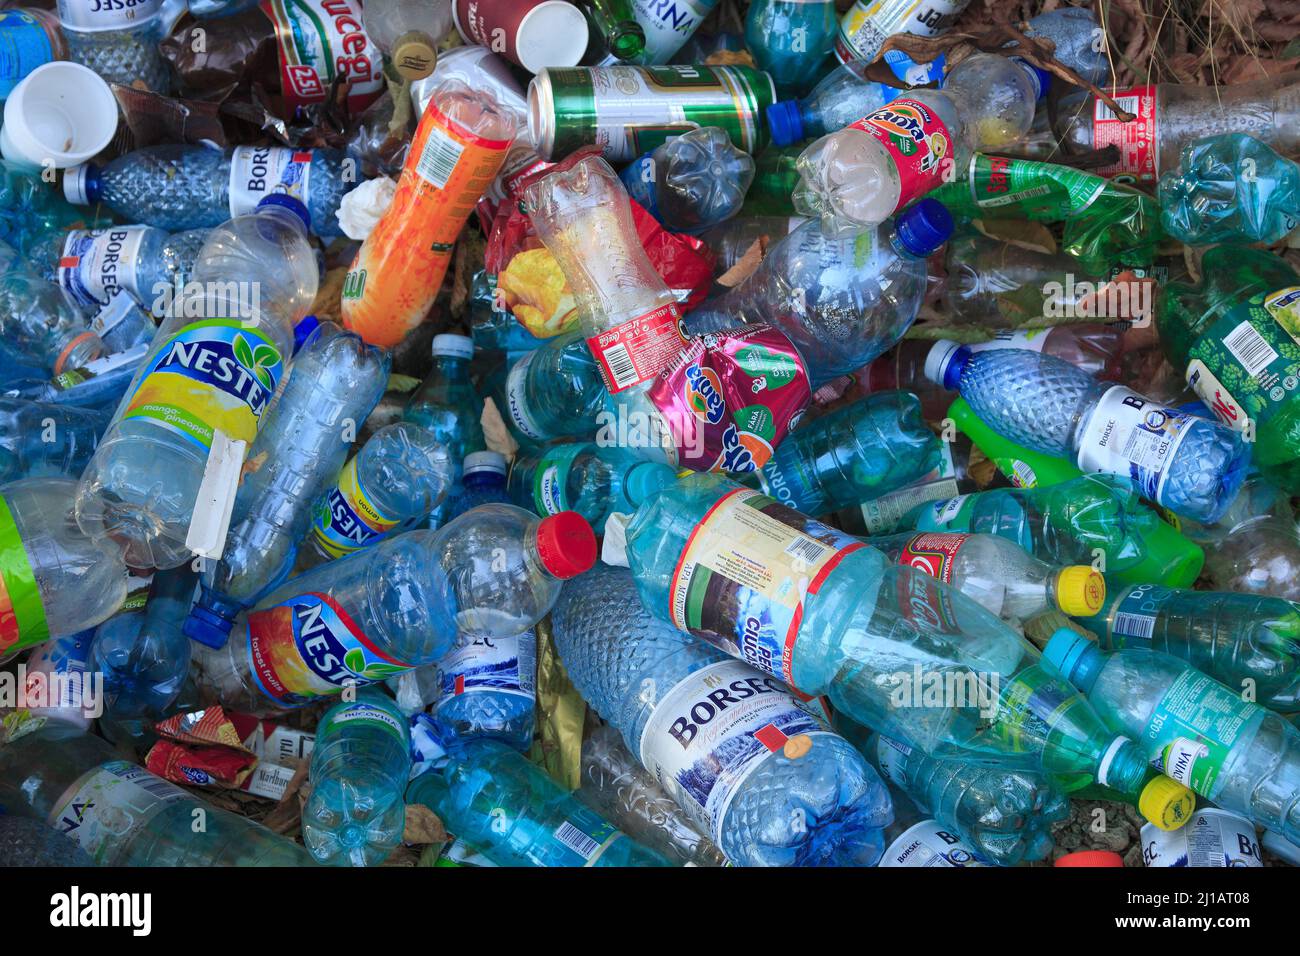 Plastikflaschen, Umweltverschmutzung, wilde Müllablagerung  /  Plastic bottles, pollution, wild garbage dumping  (Aufnahmedatum kann abweichen) Stock Photo